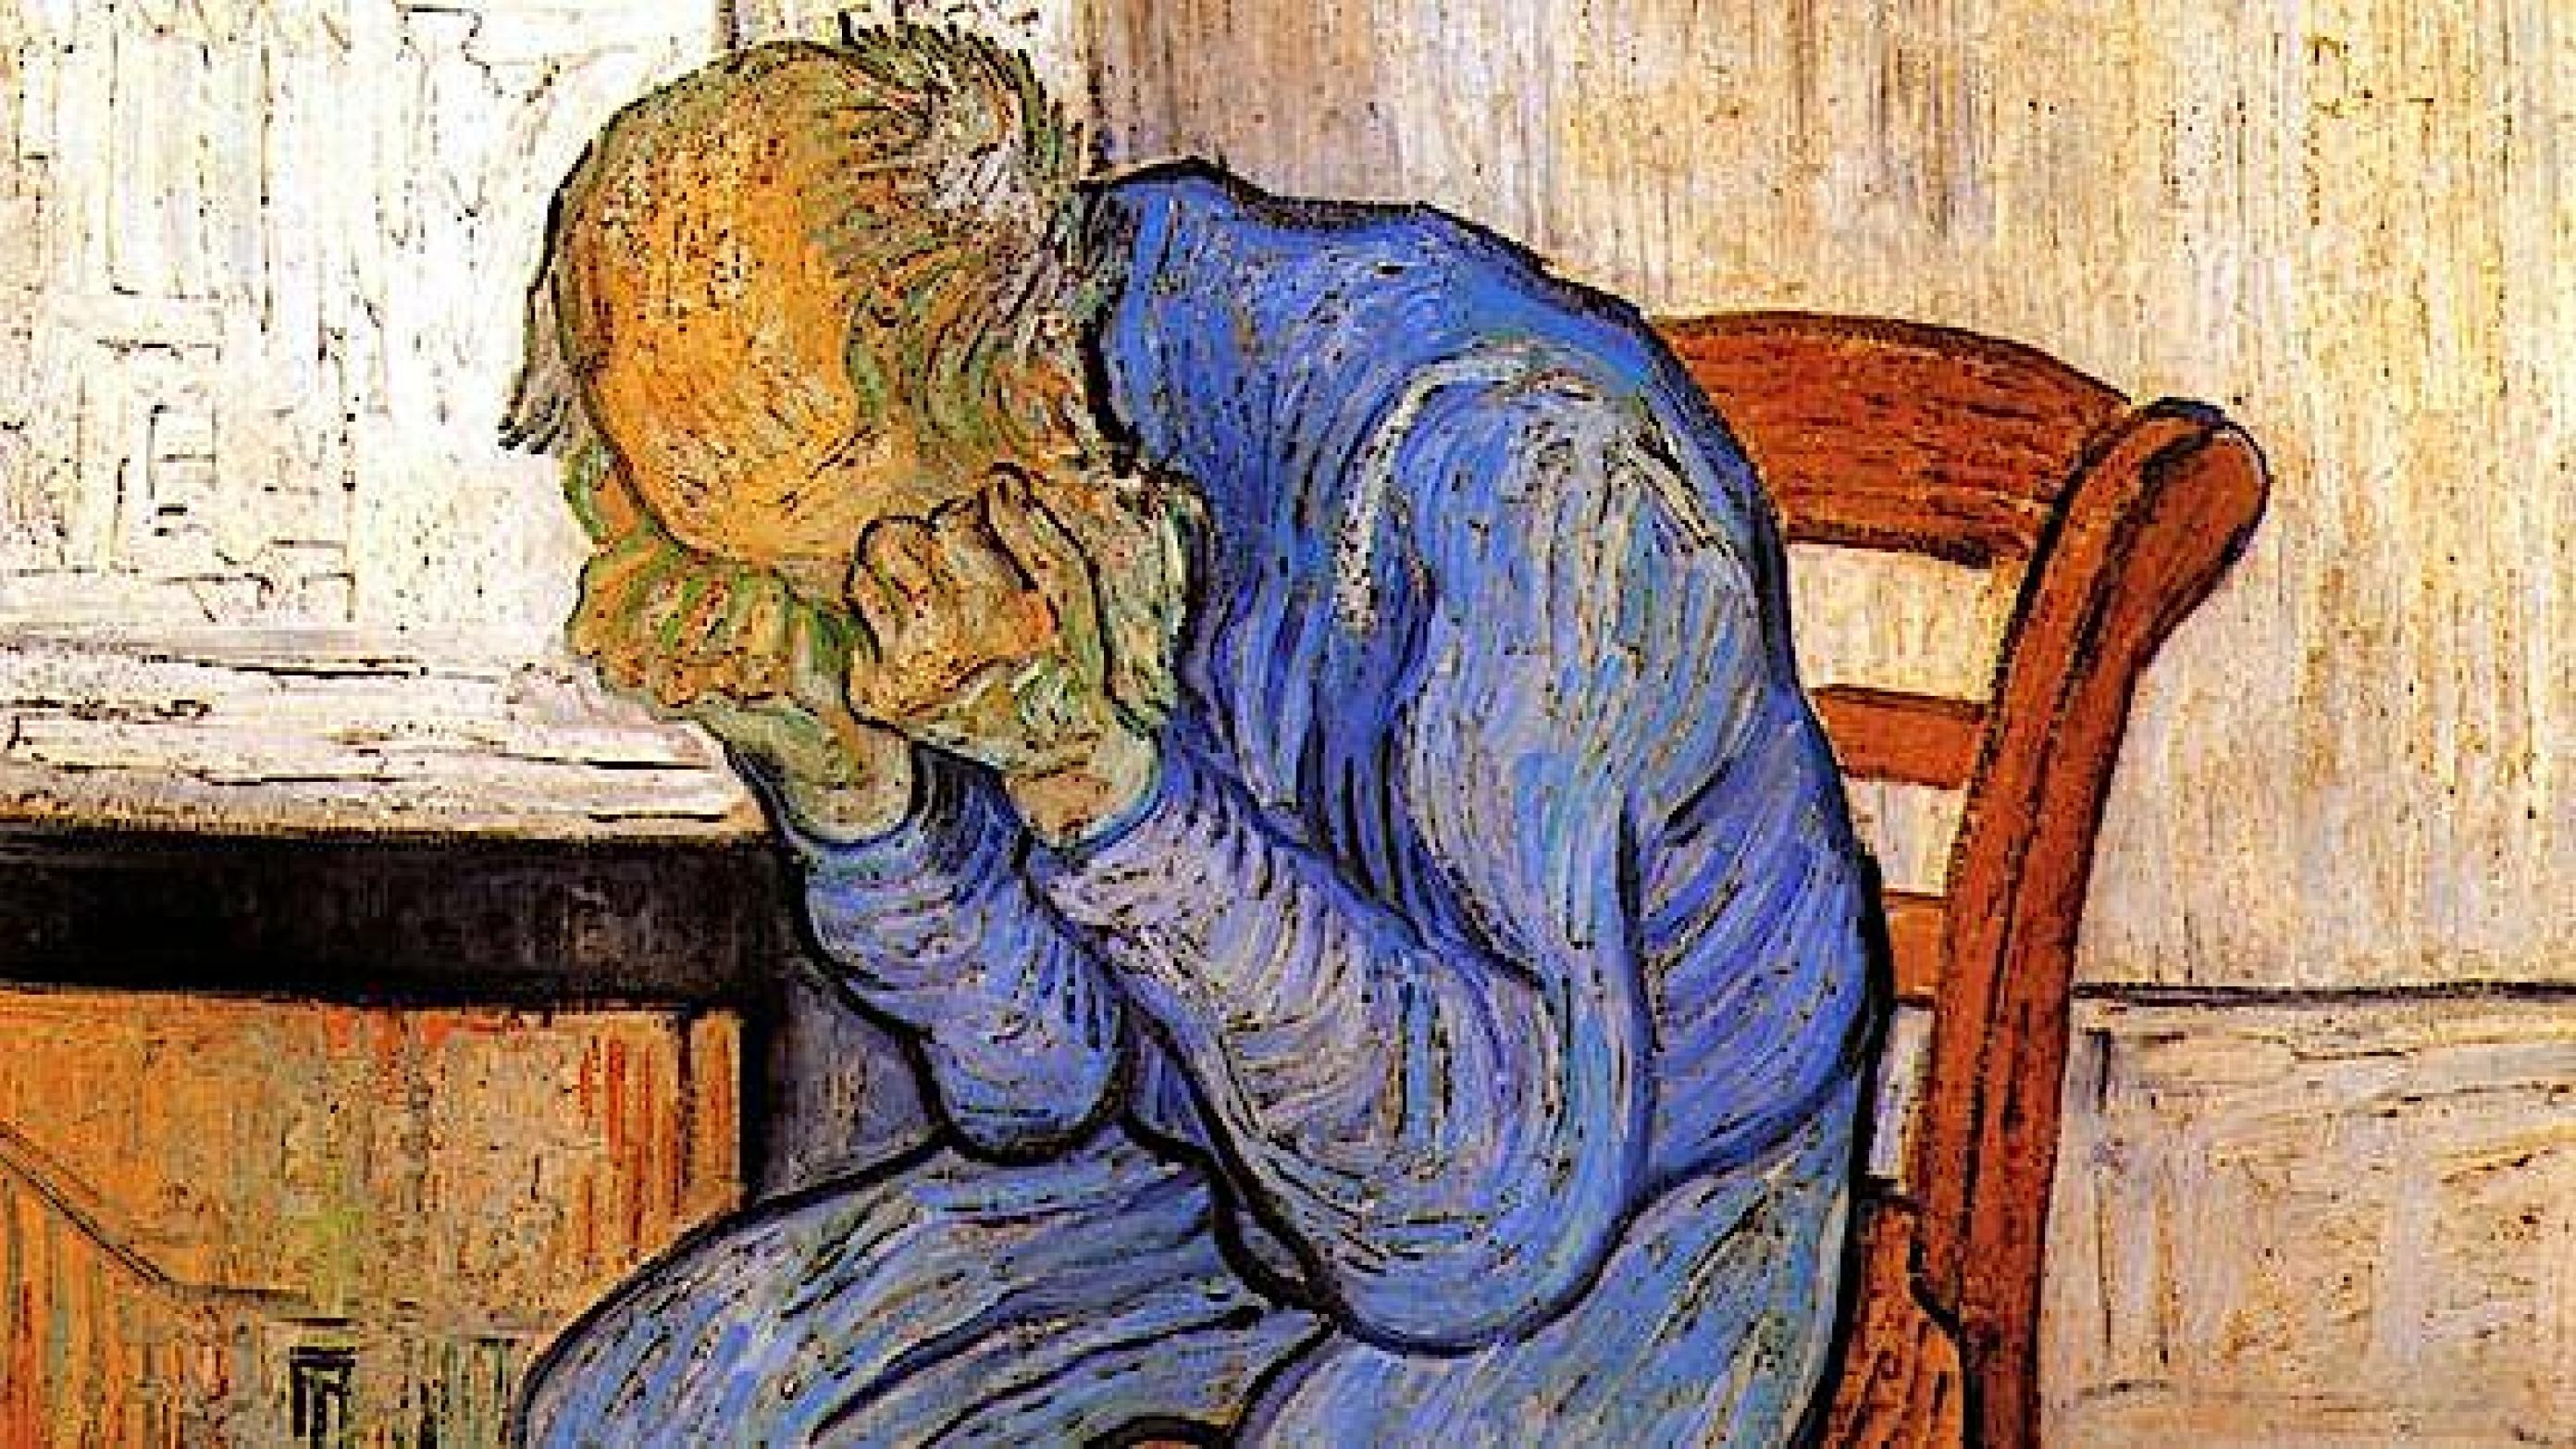 Depressionssymptomer hos ældre kan hænge sammen med tab af kognitive evner uden de neuropatologiske kendetegn på demenssygdom. Foto: Vincent van Gogh / Wikipedia